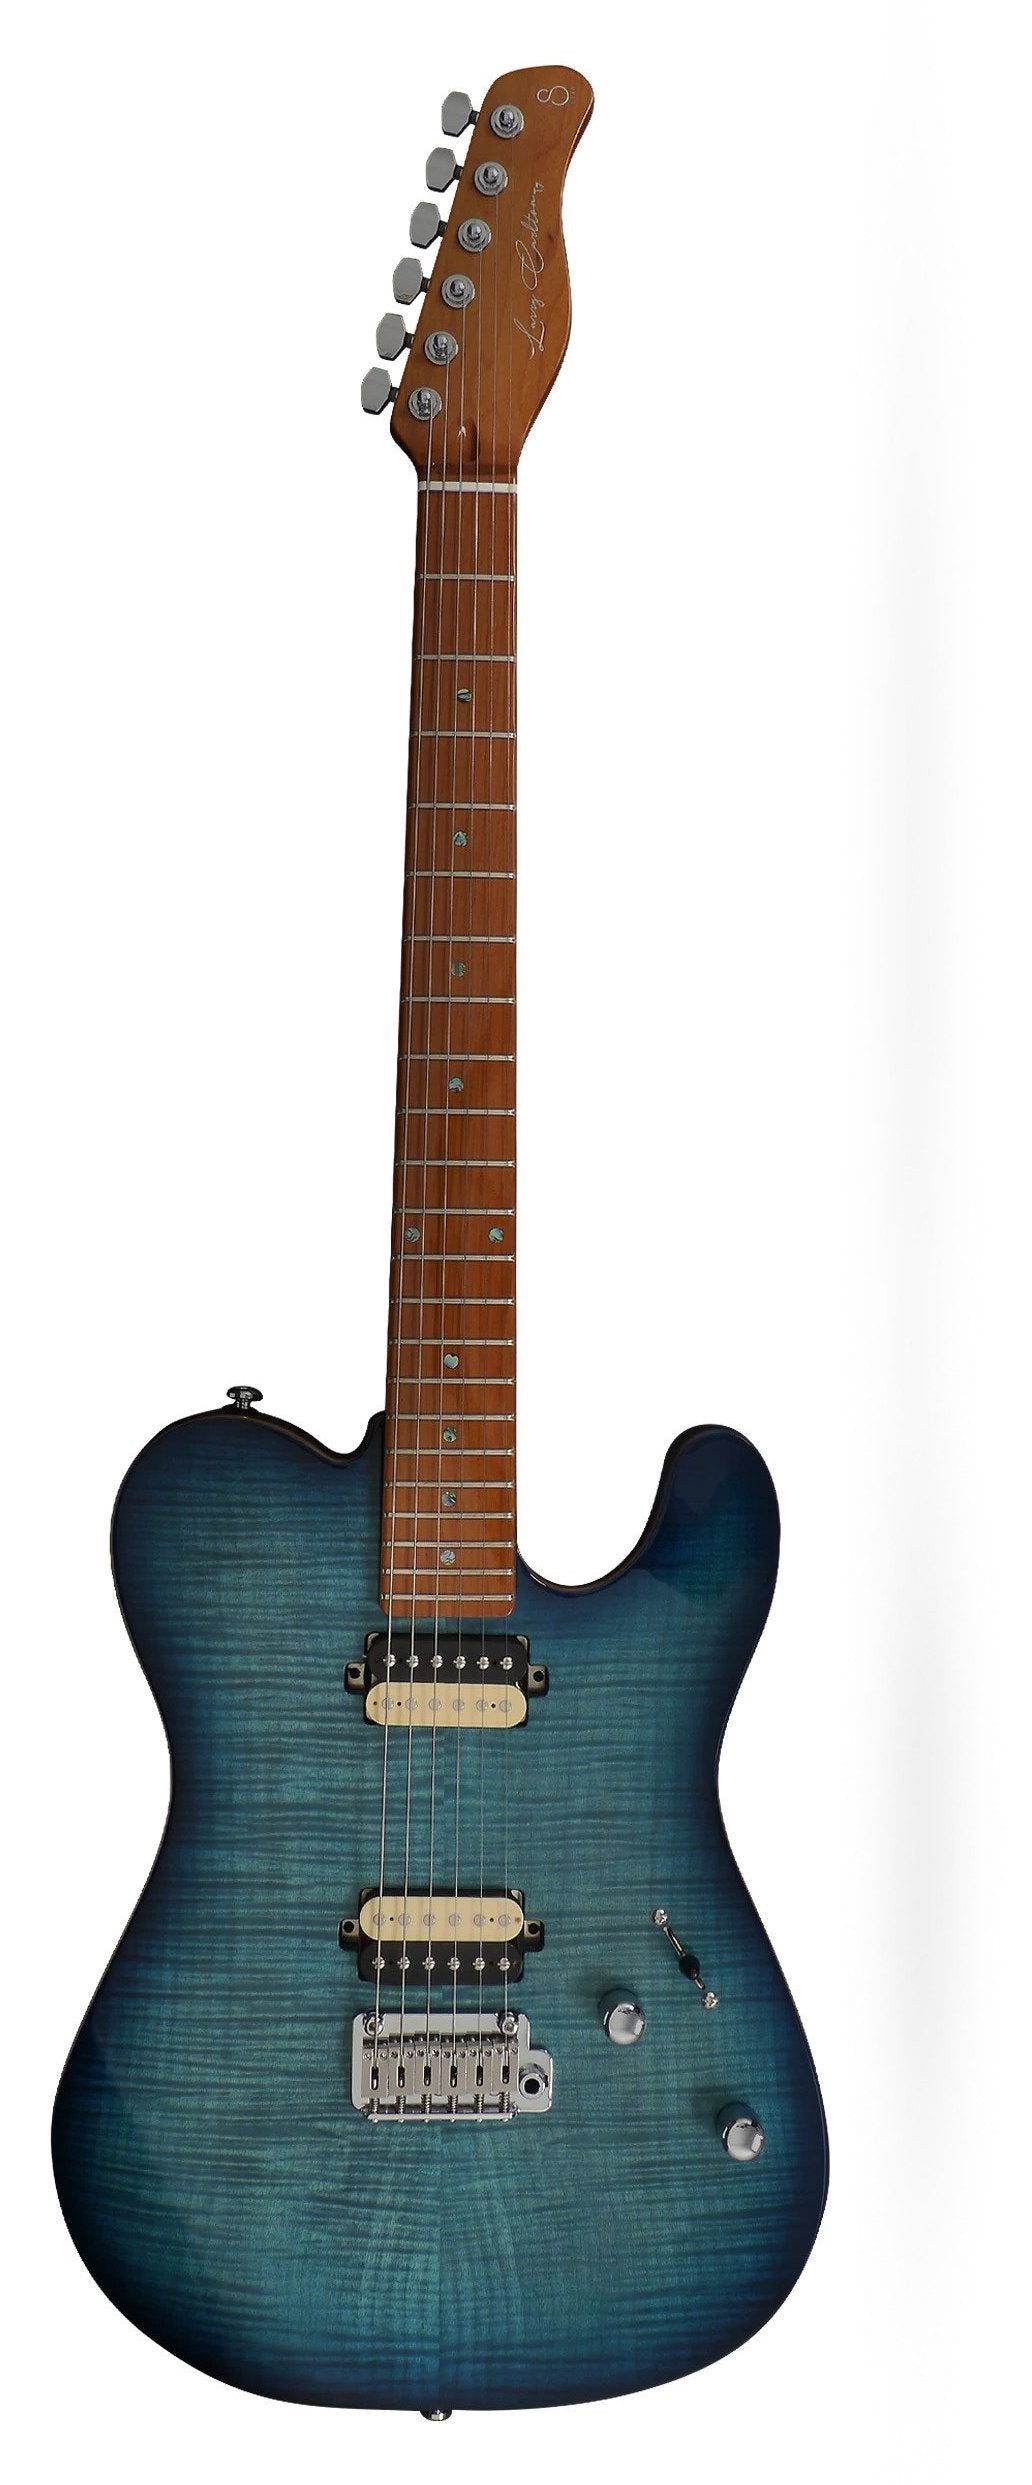 Larry Carlton T7 FM Sire Electric Guitar - Transparent Blue